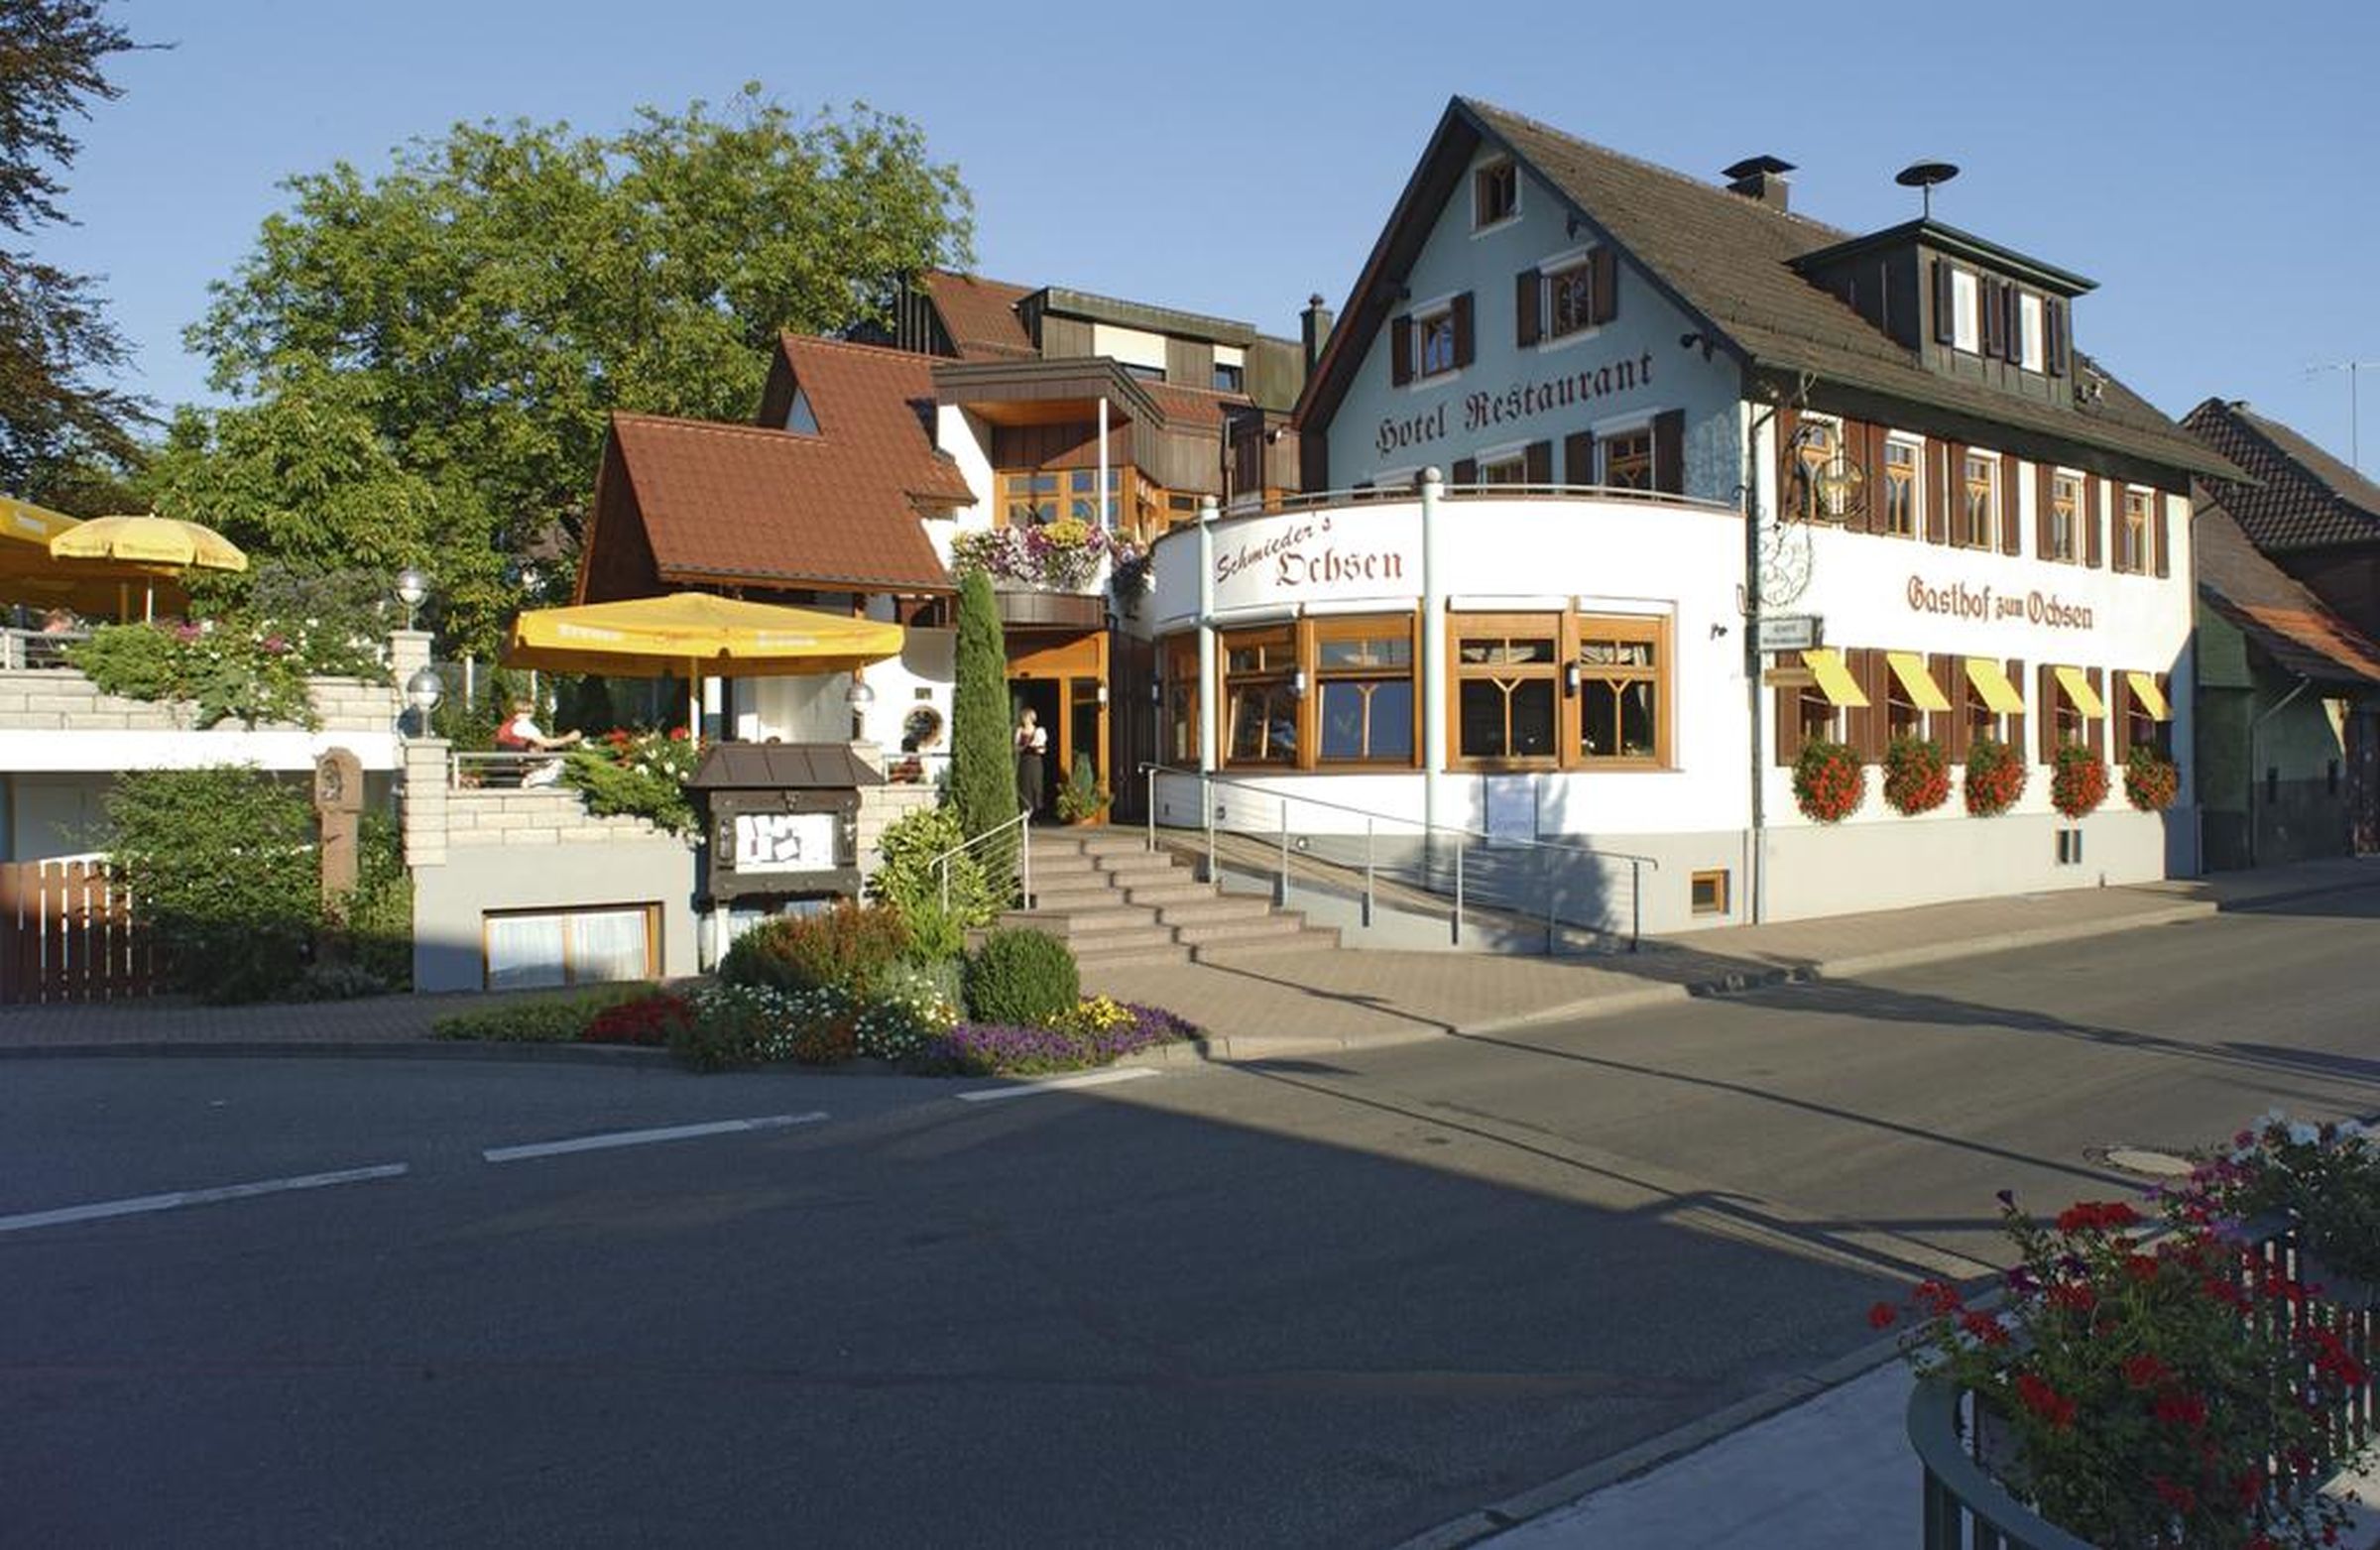 Hotel garni Schmieders Ochsen, (Seelbach). Dreibet Ferienhaus in Deutschland